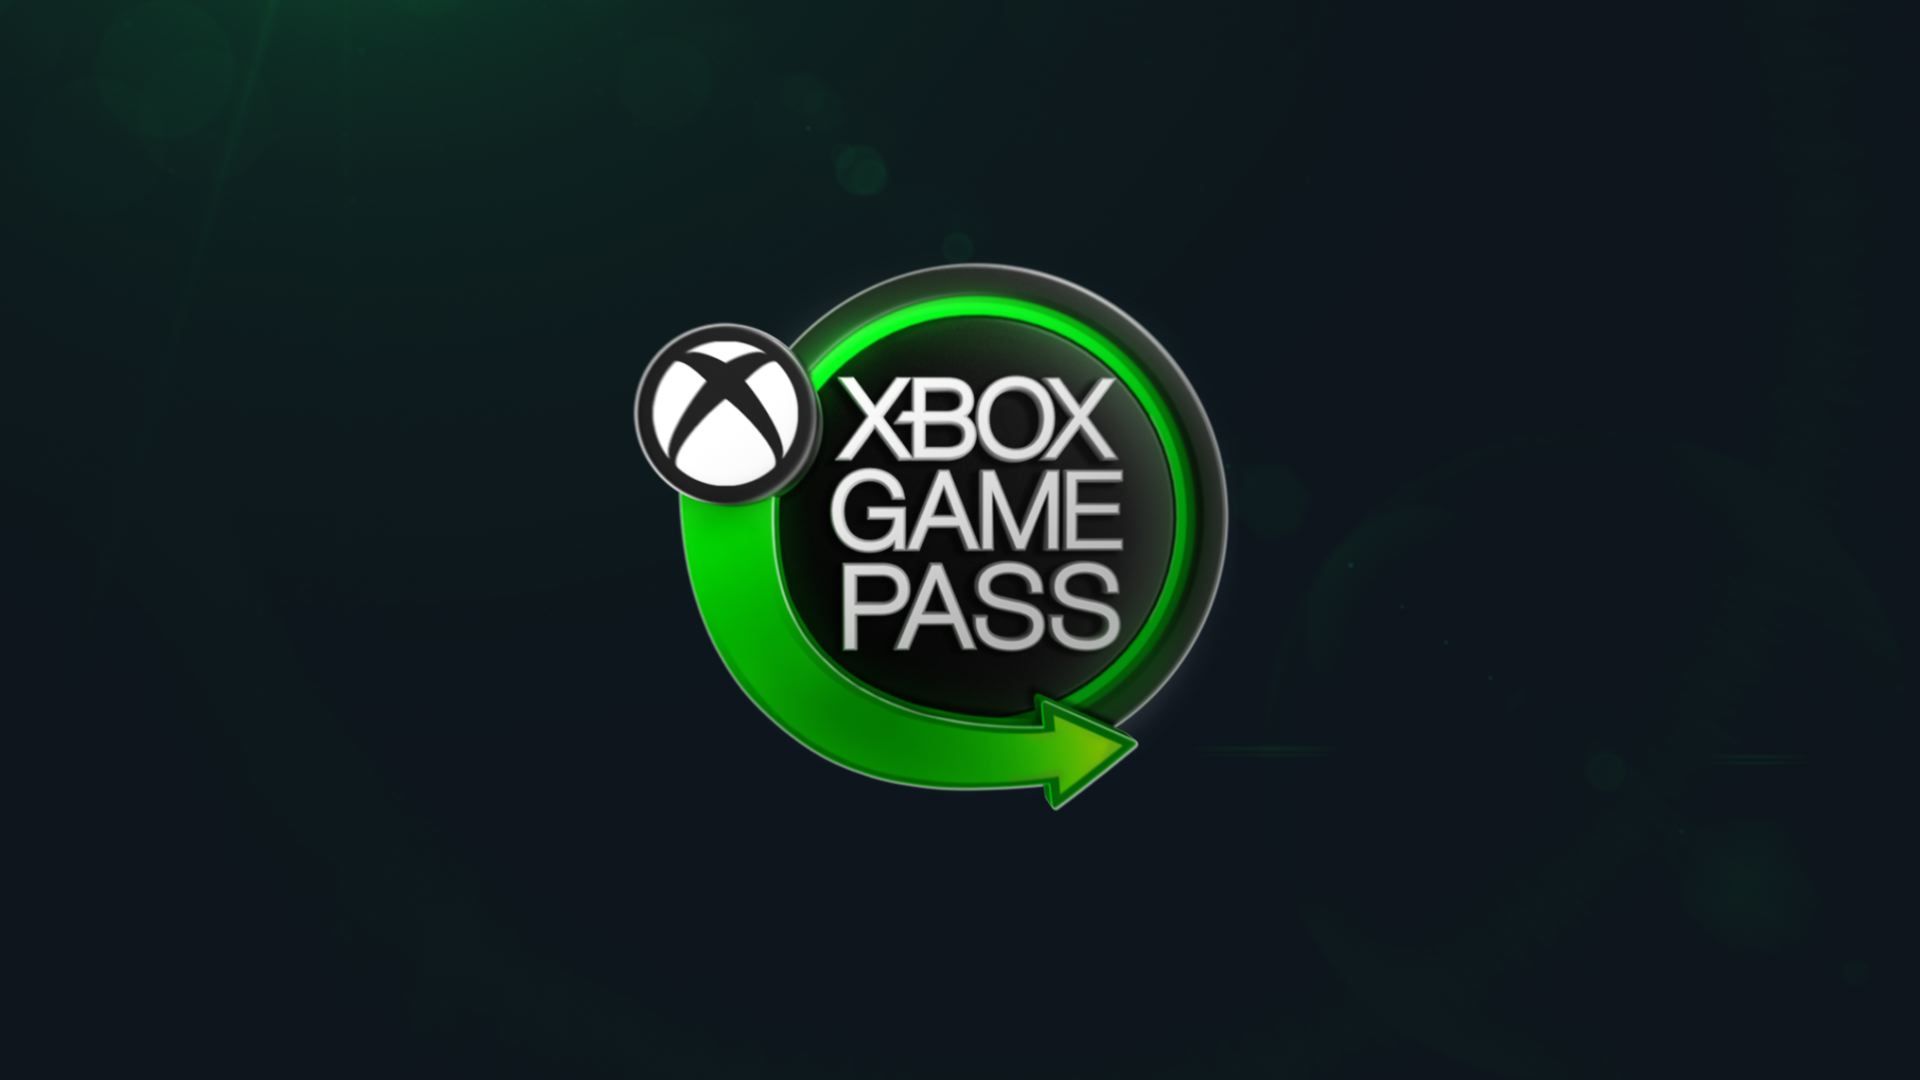 Seriuos Sam kommt zum Xbox Game Pass 